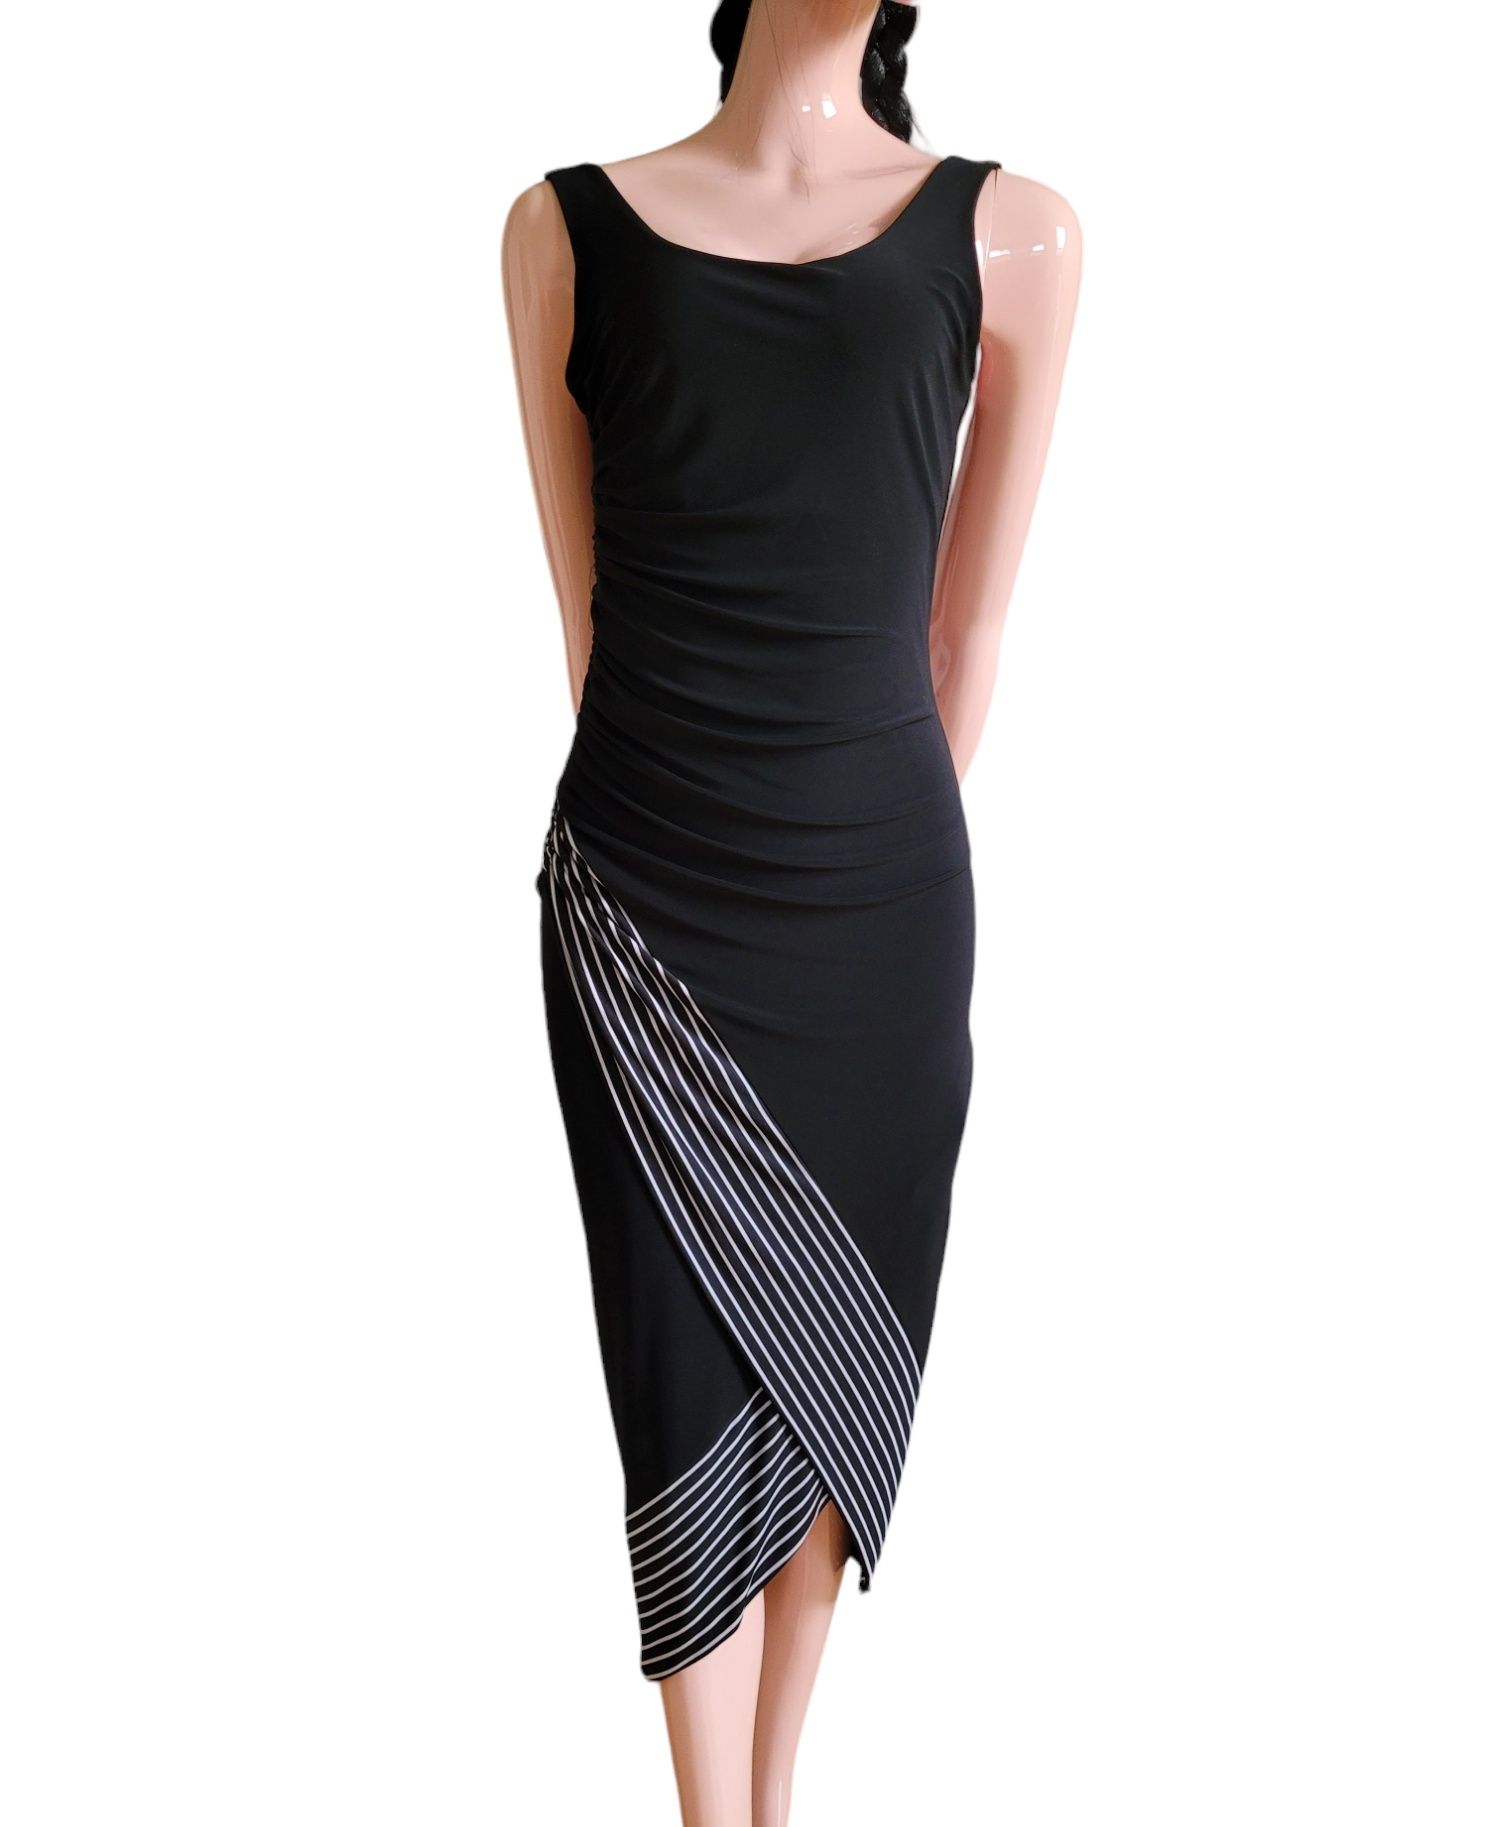 Piękna czarna sukienka marki Joseph Ribkoff